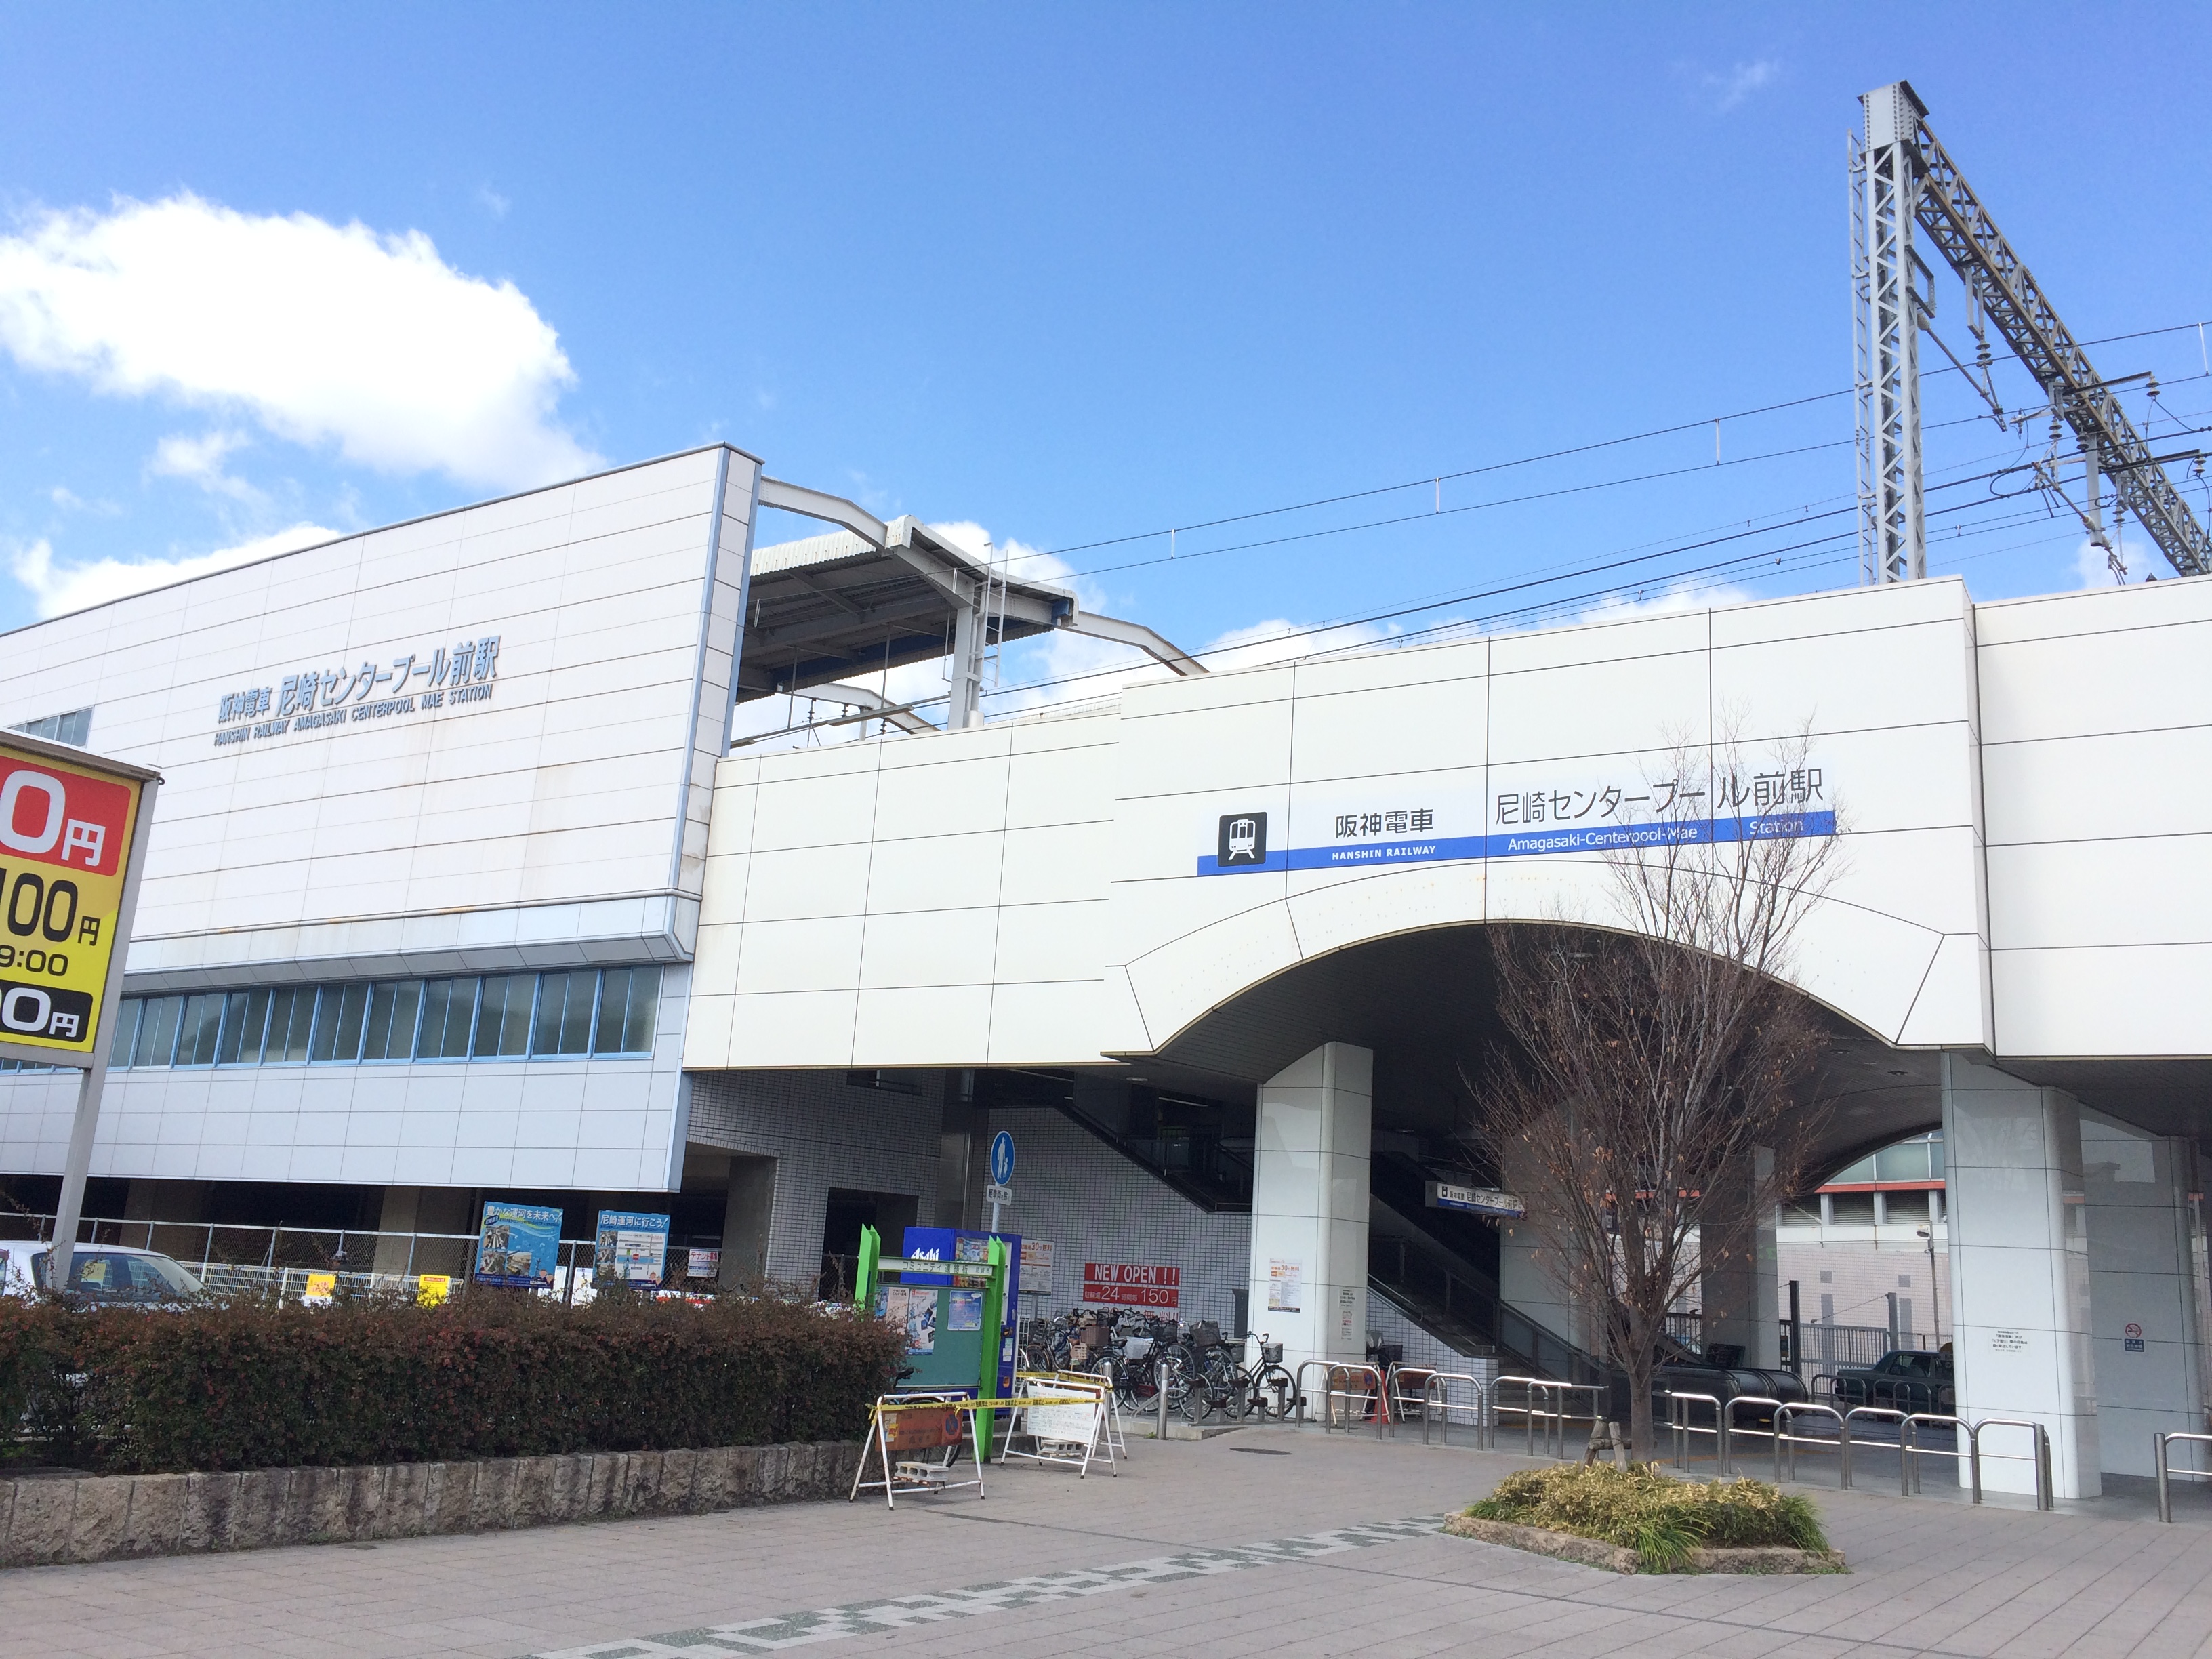 尼崎センタープール前駅 Wikipedia